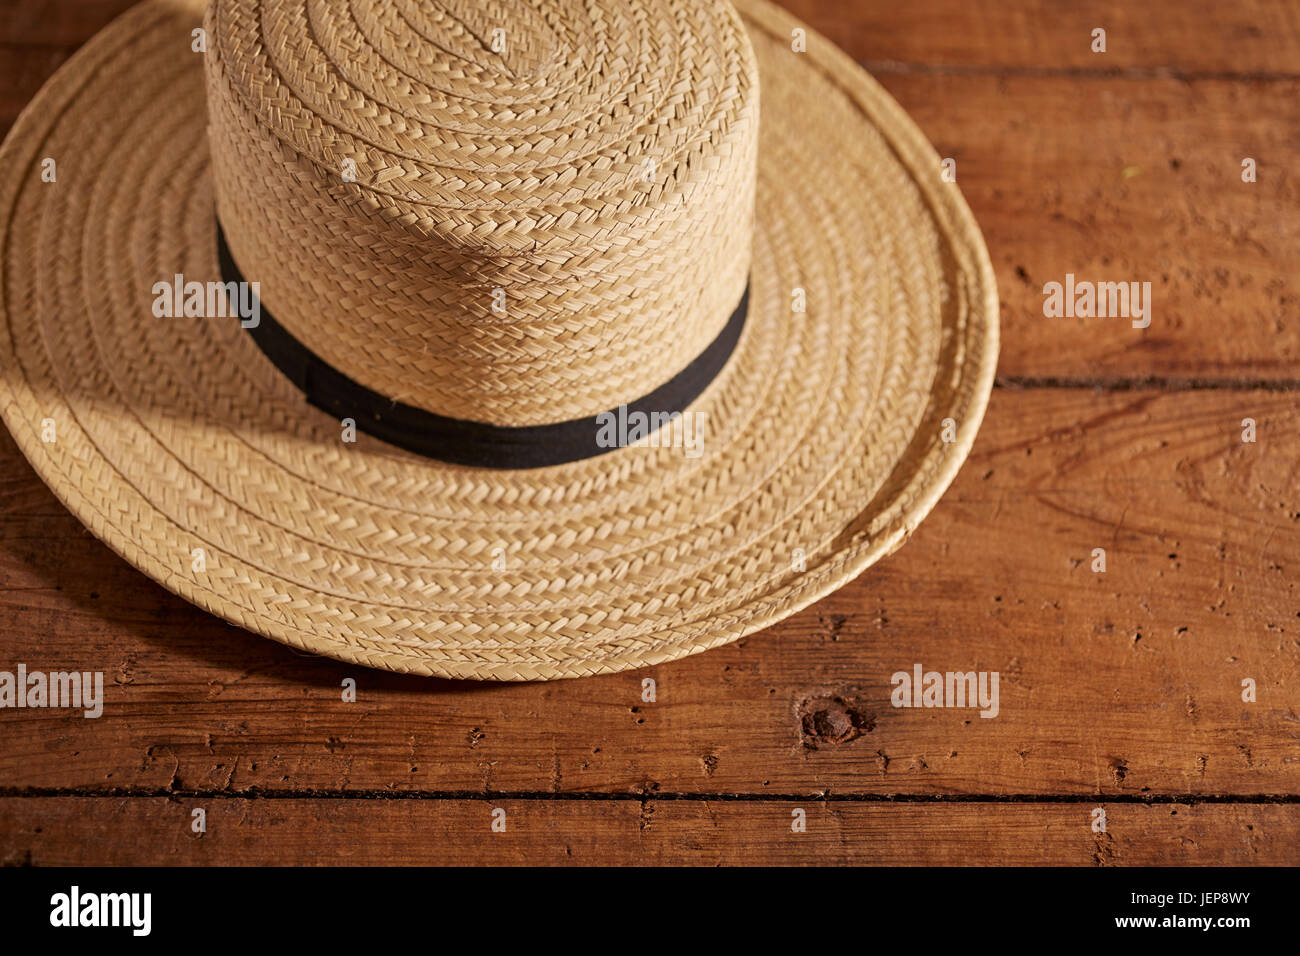 Eine klassische Amish Mannes Strohhut Stockfotografie - Alamy